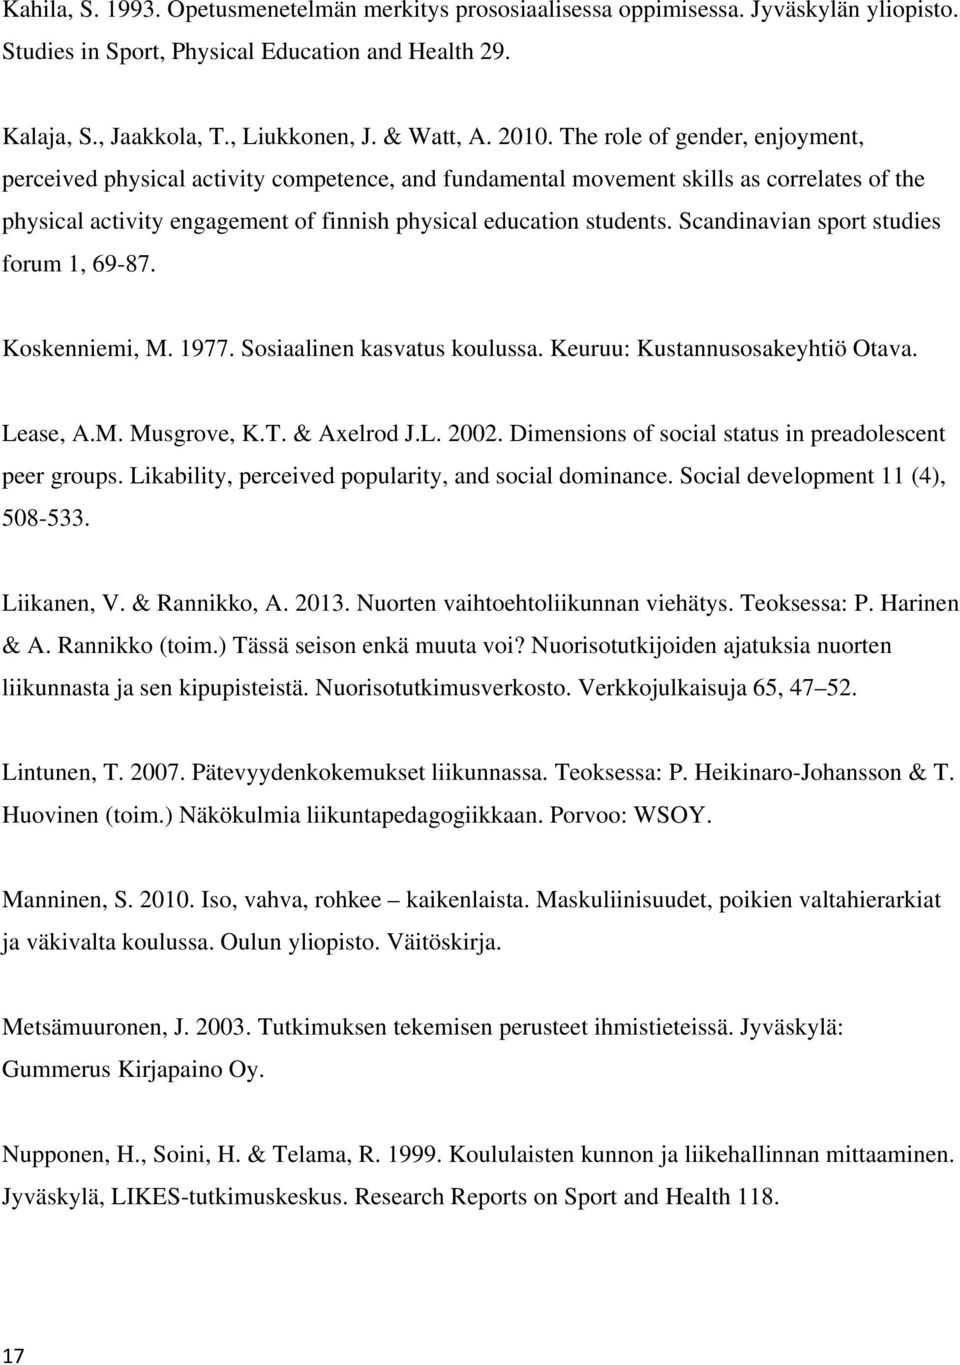 Scandinavian sport studies forum 1, 69-87. Koskenniemi, M. 1977. Sosiaalinen kasvatus koulussa. Keuruu: Kustannusosakeyhtiö Otava. Lease, A.M. Musgrove, K.T. & Axelrod J.L. 2002.